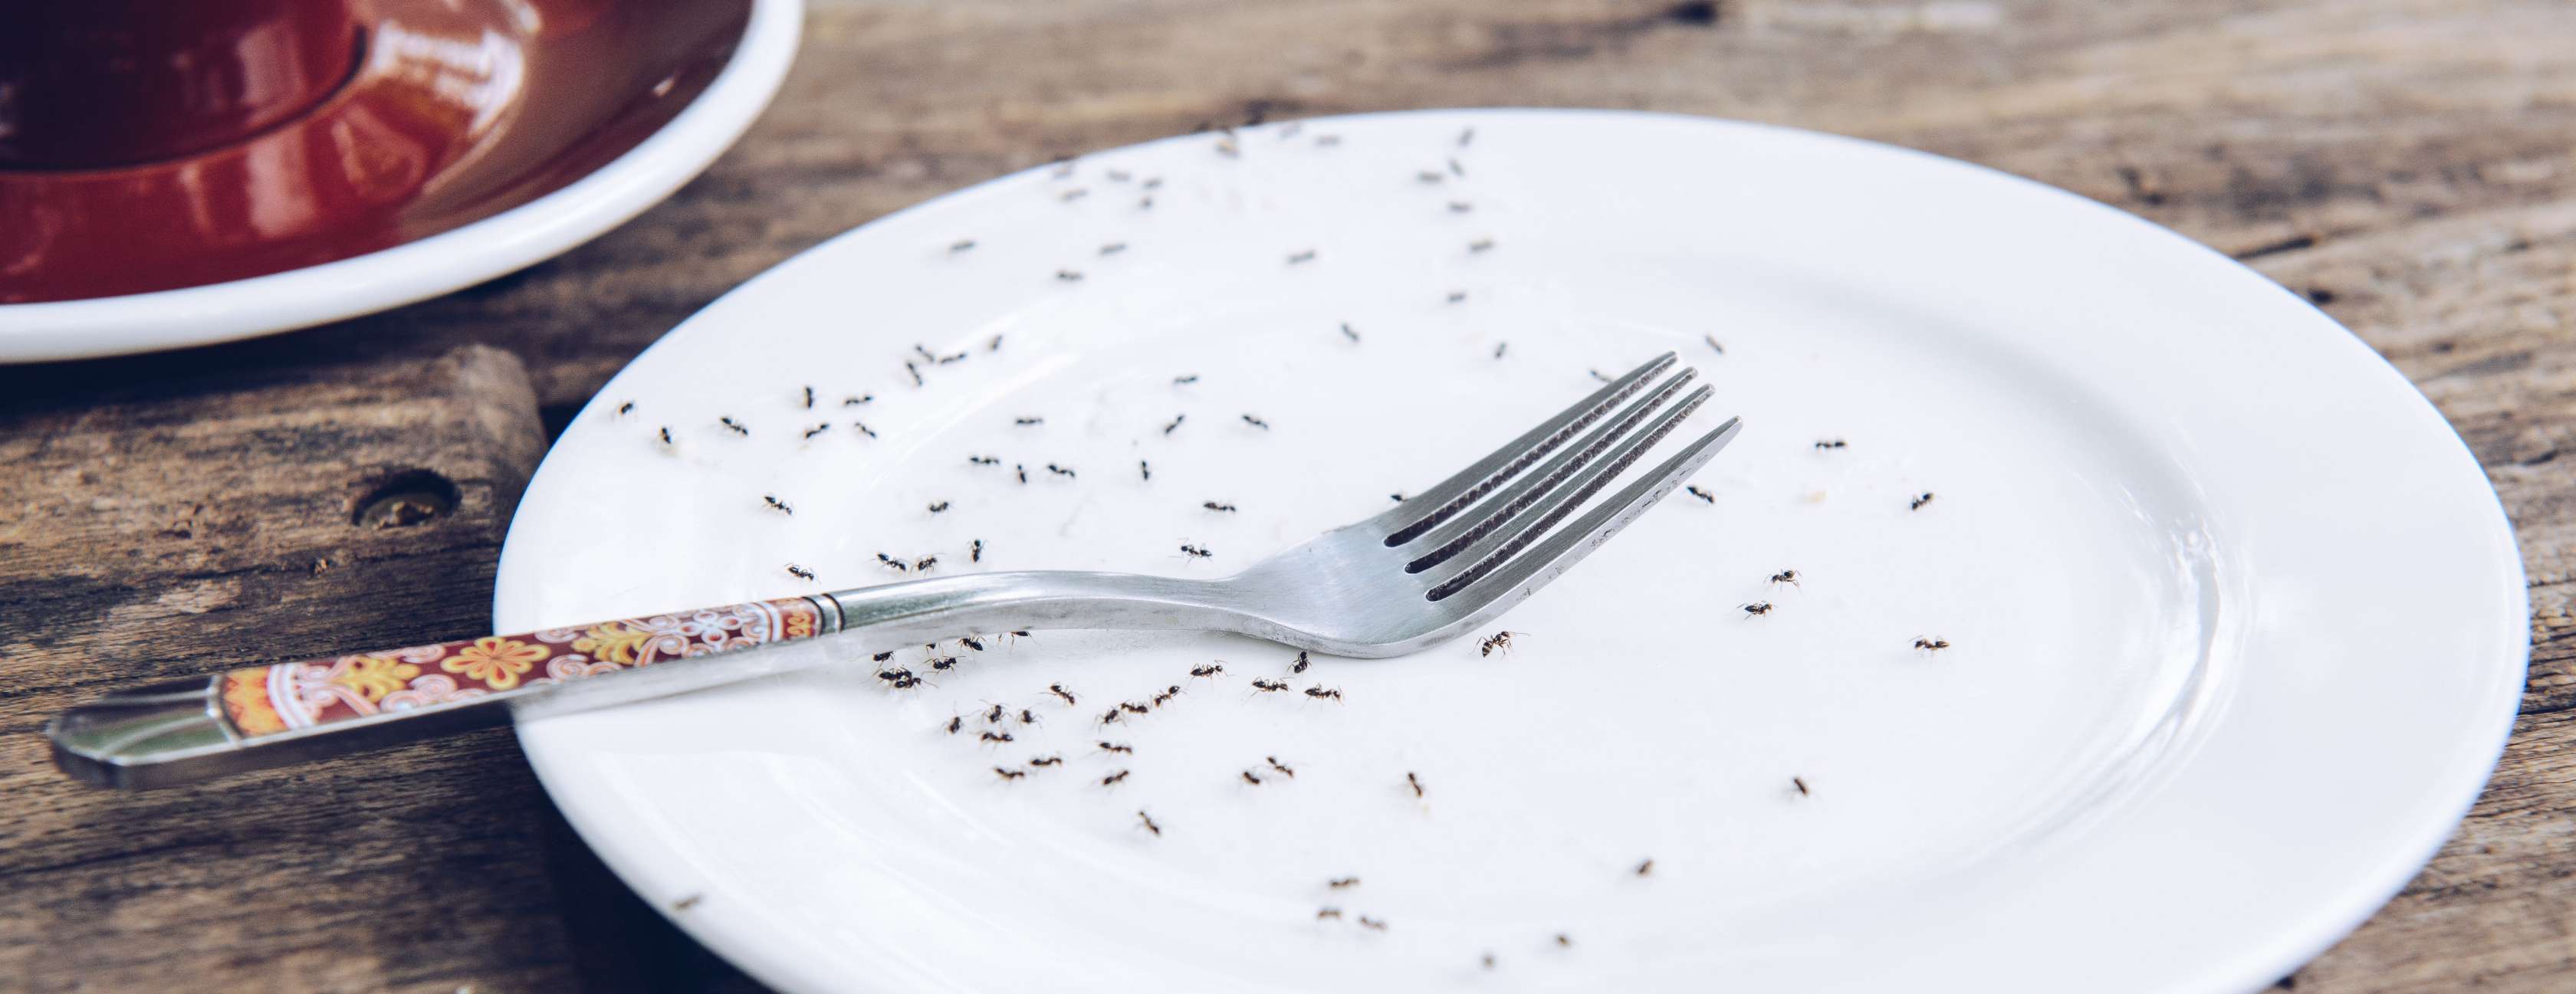 Ameisen im Haus Ursache: Ameisen tummeln sich auf leerem Kuchenteller